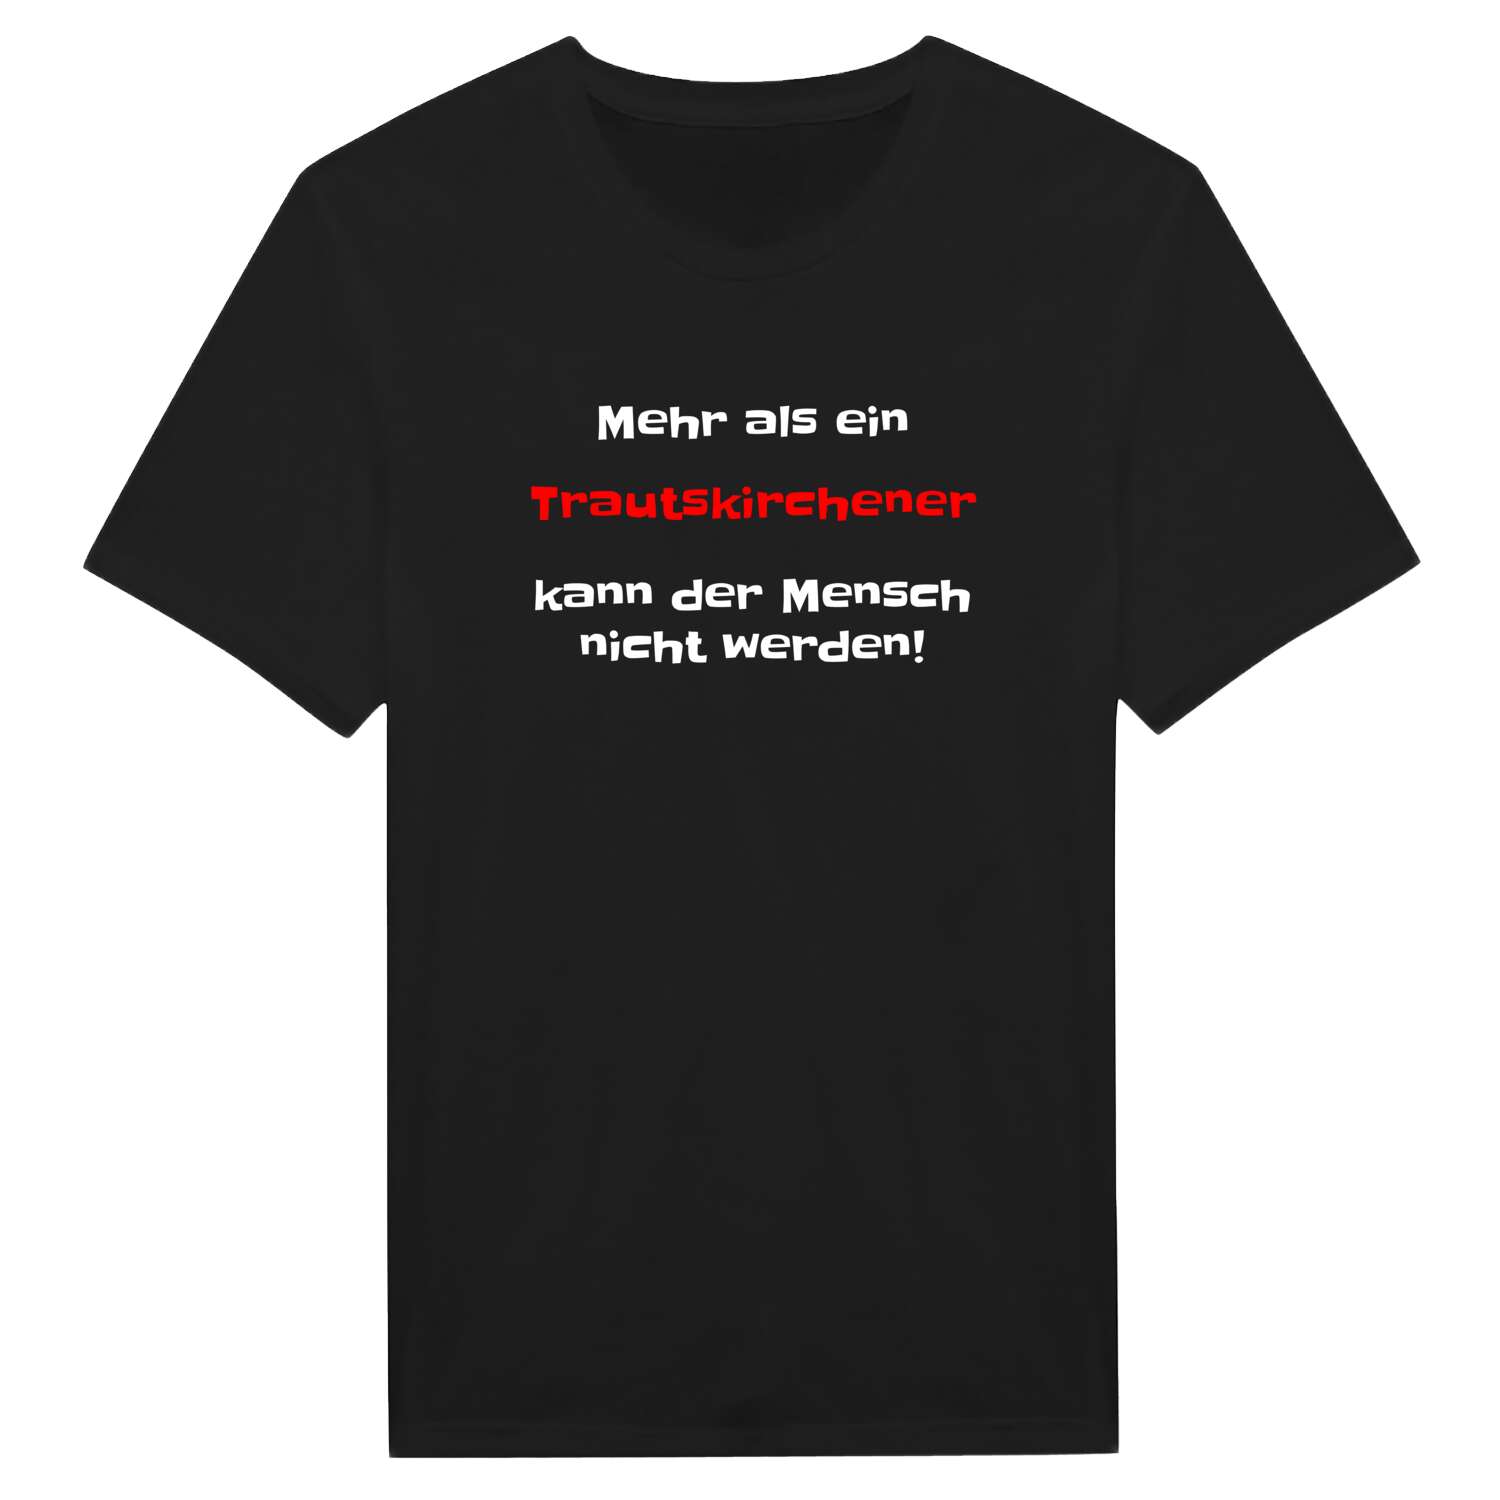 Trautskirchen T-Shirt »Mehr als ein«